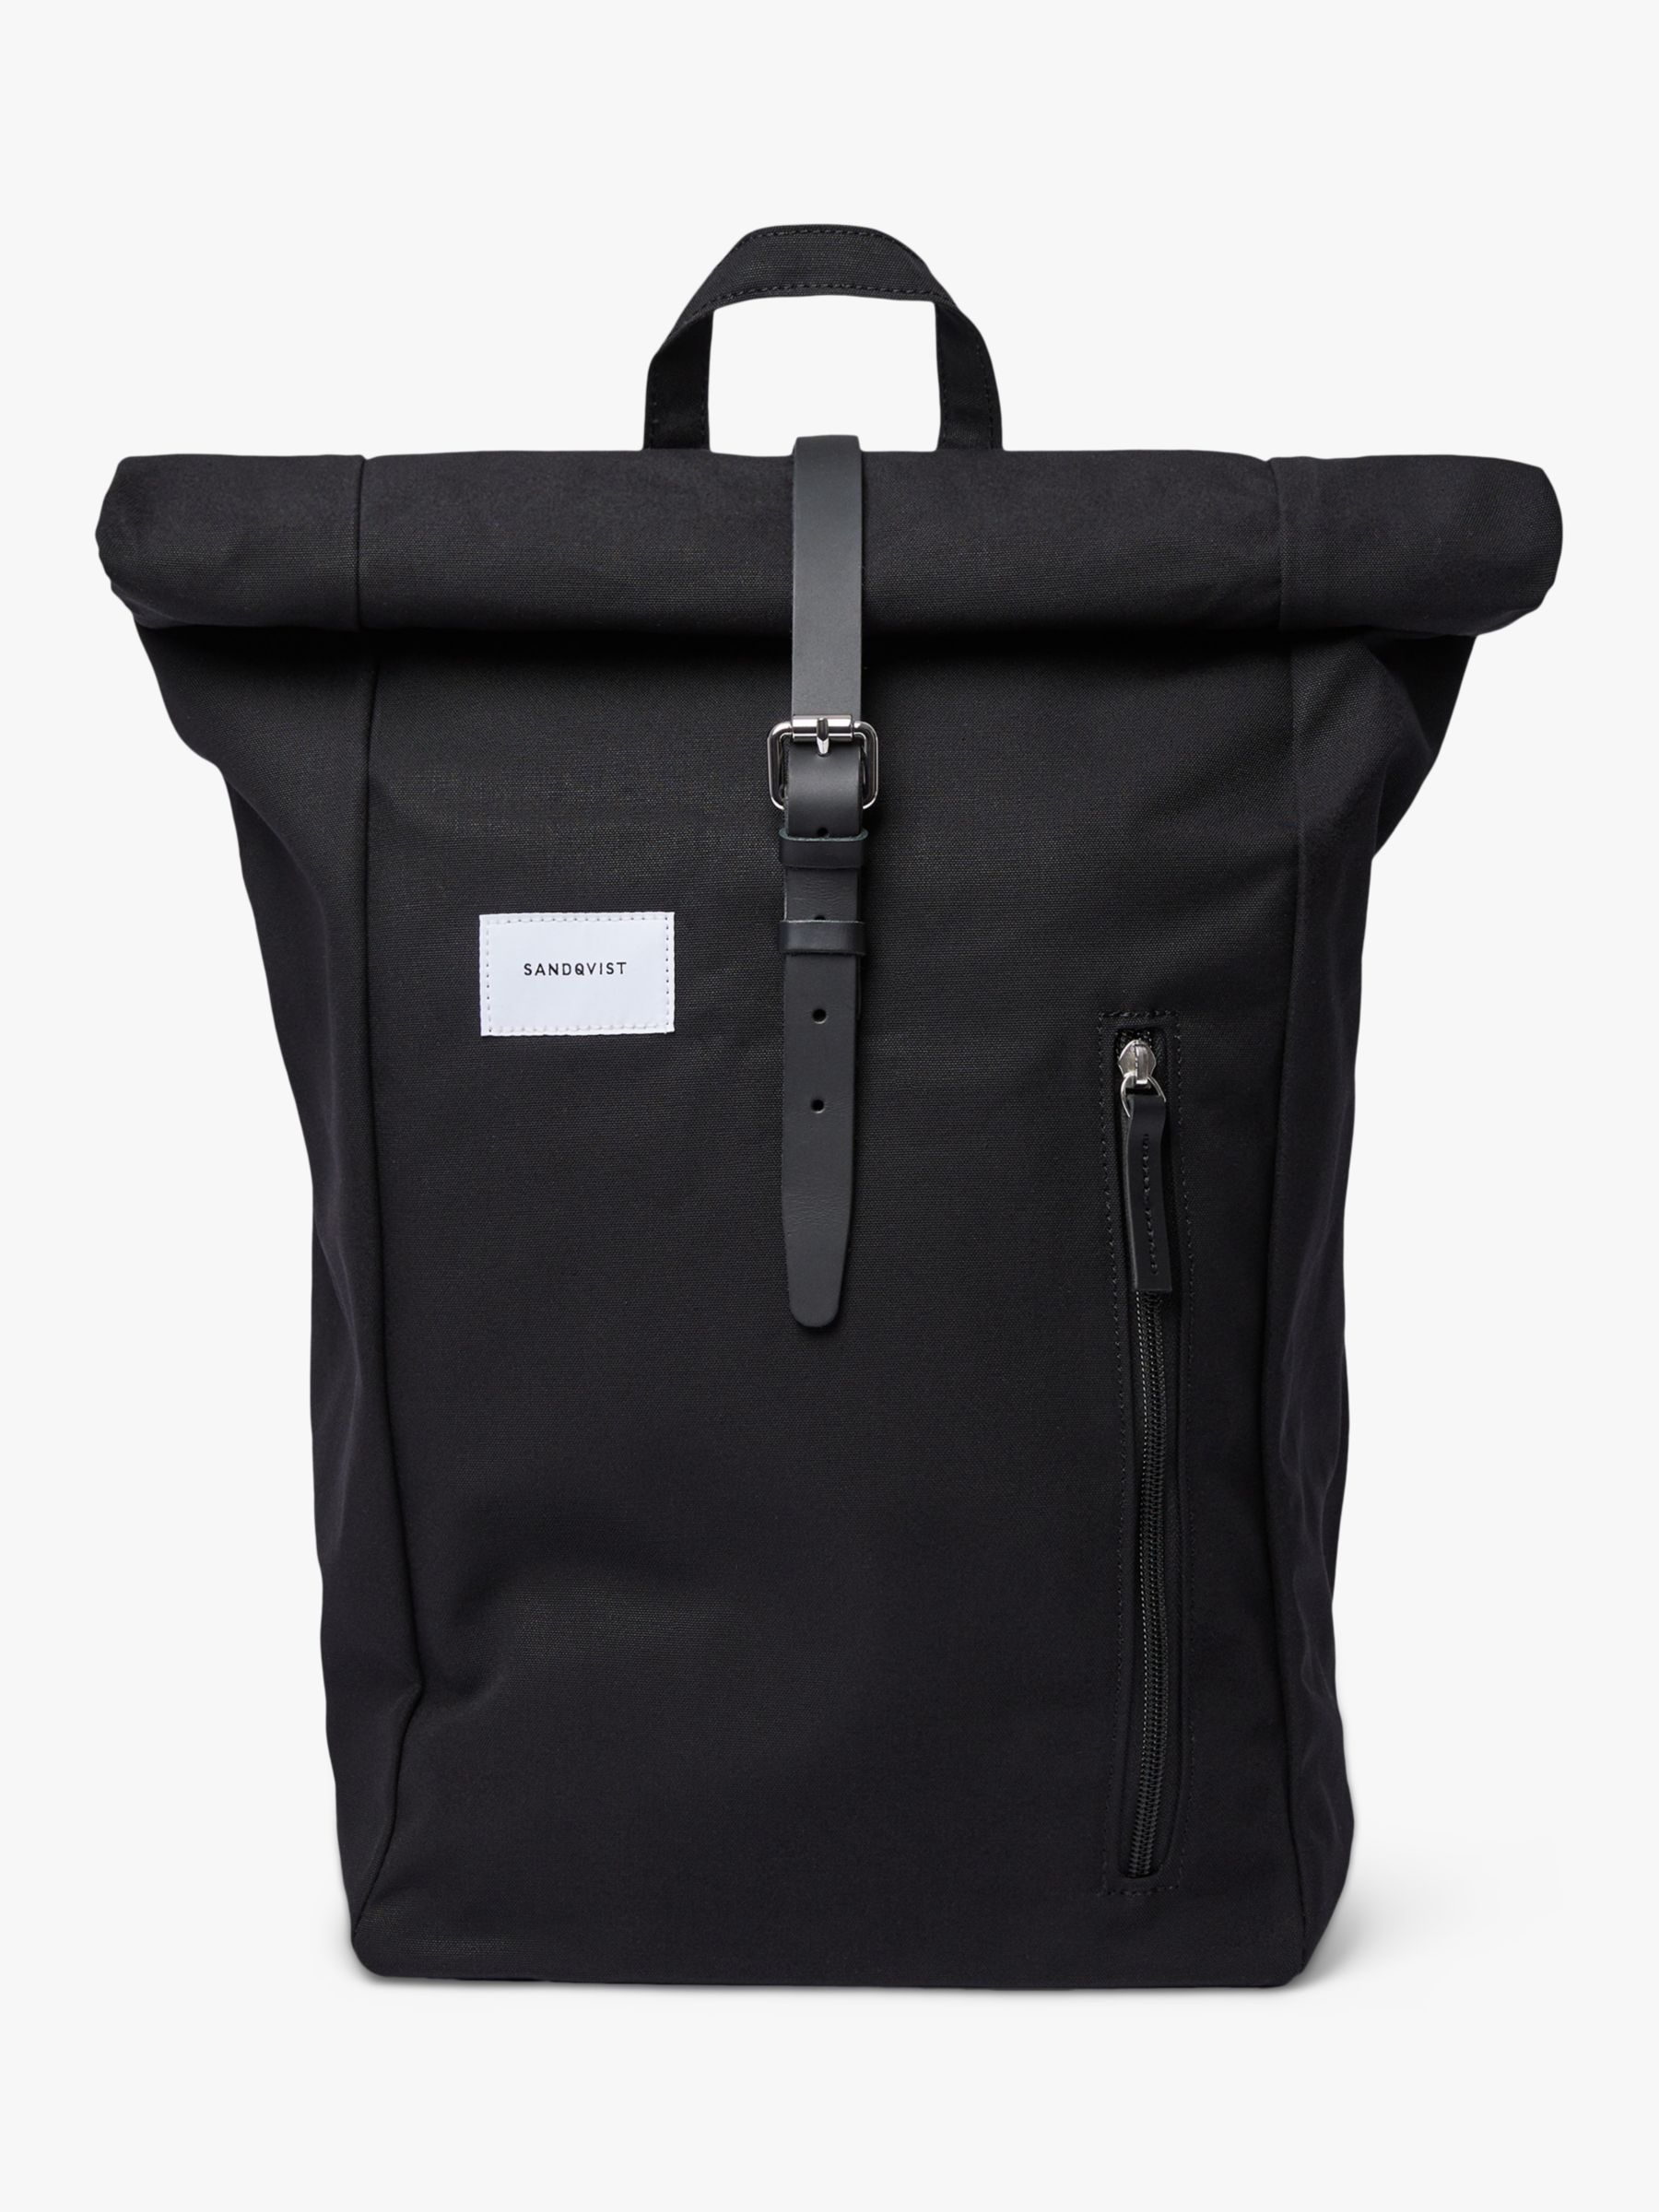 Данте Рюкзак Sandqvist, черный мужской водонепроницаемый рюкзак из ткани оксфорд для ноутбука 16 дюймов